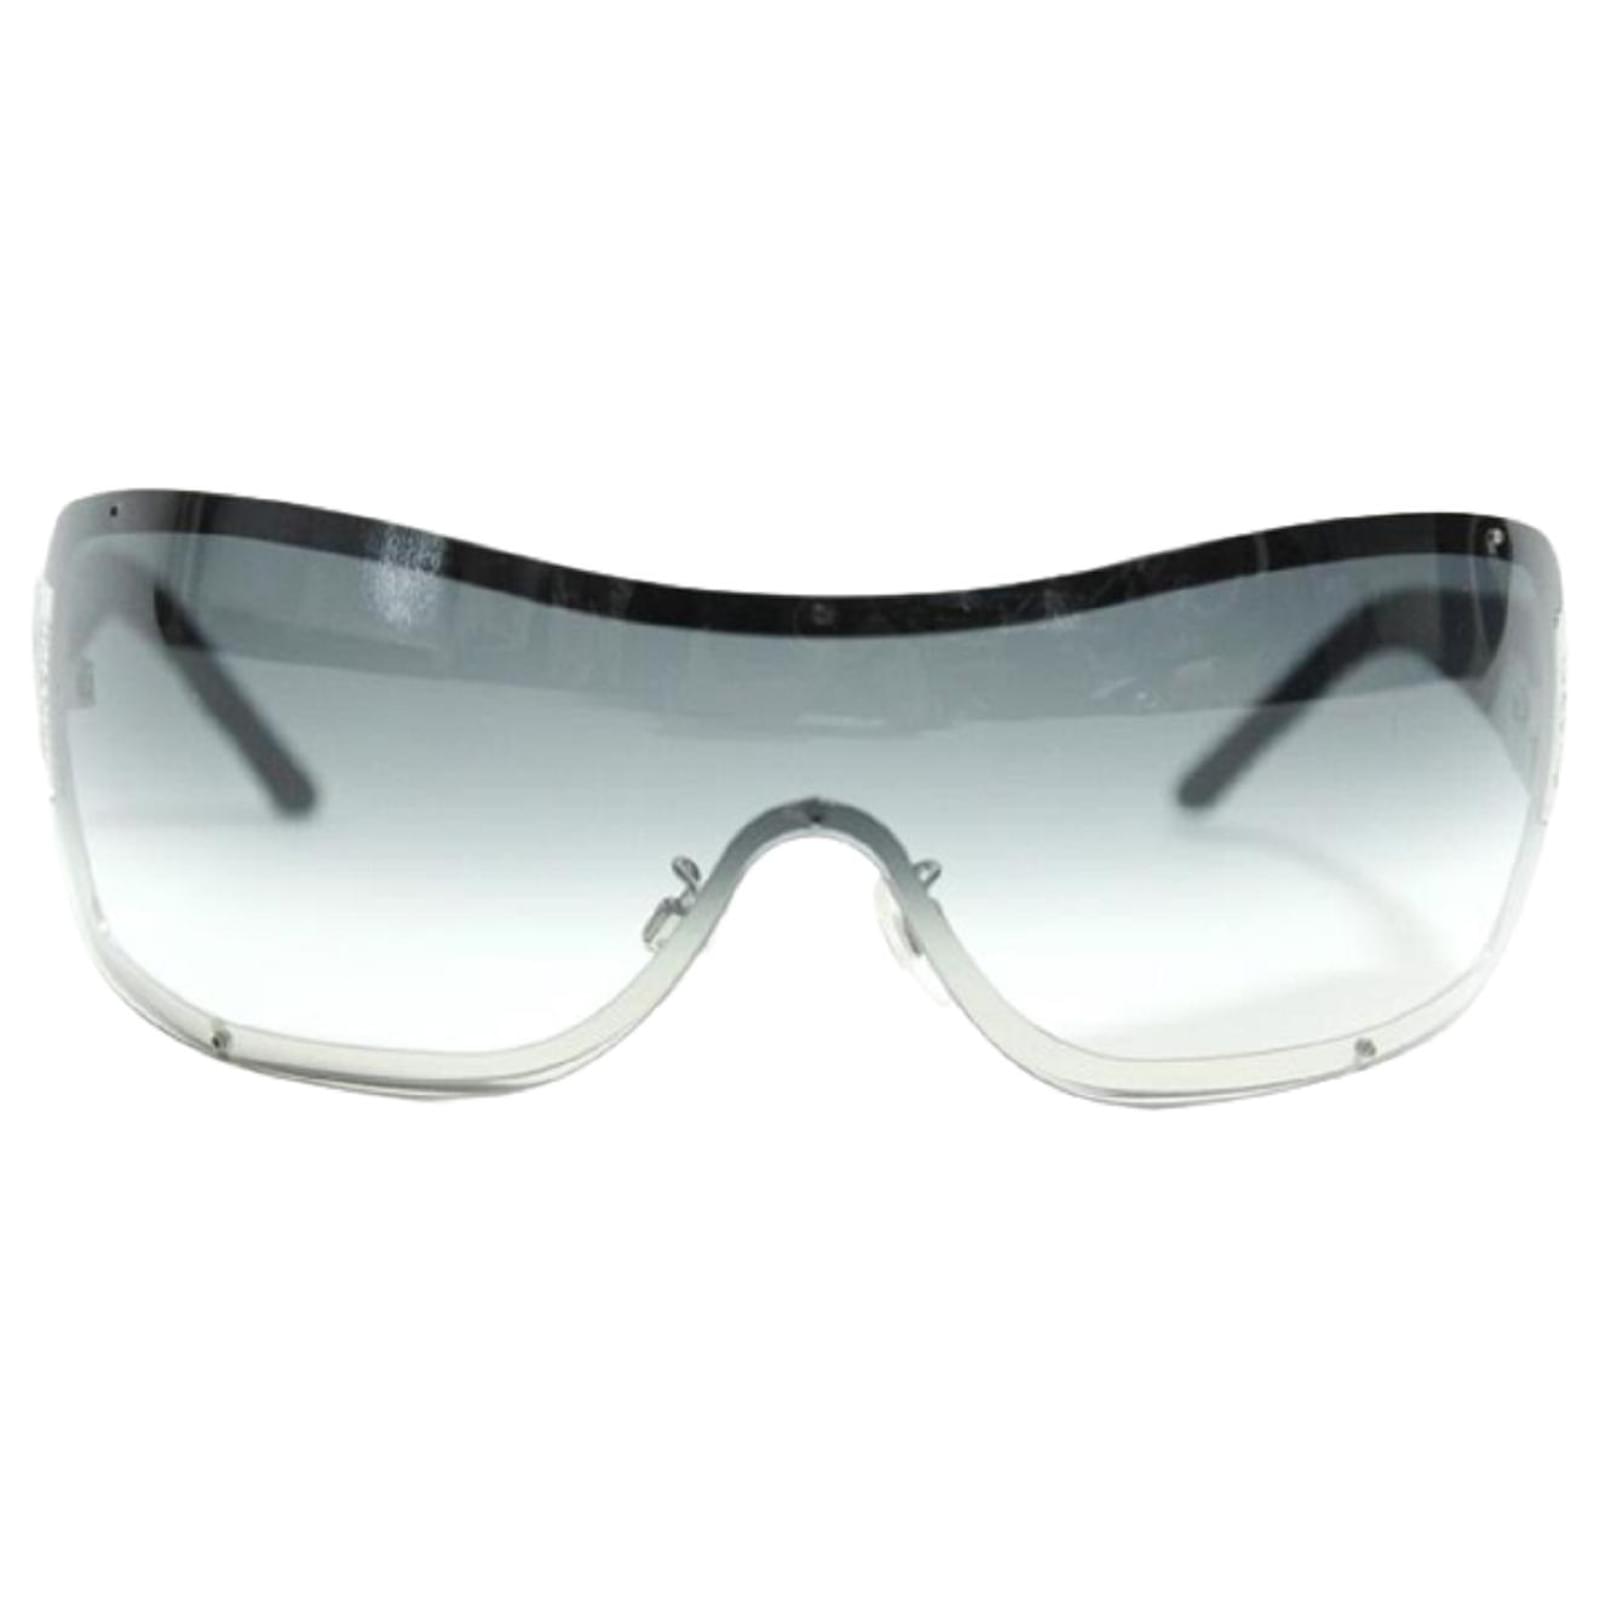 Used] CHANEL 4126 Matelasse Gradient Sunglasses Black Ladies